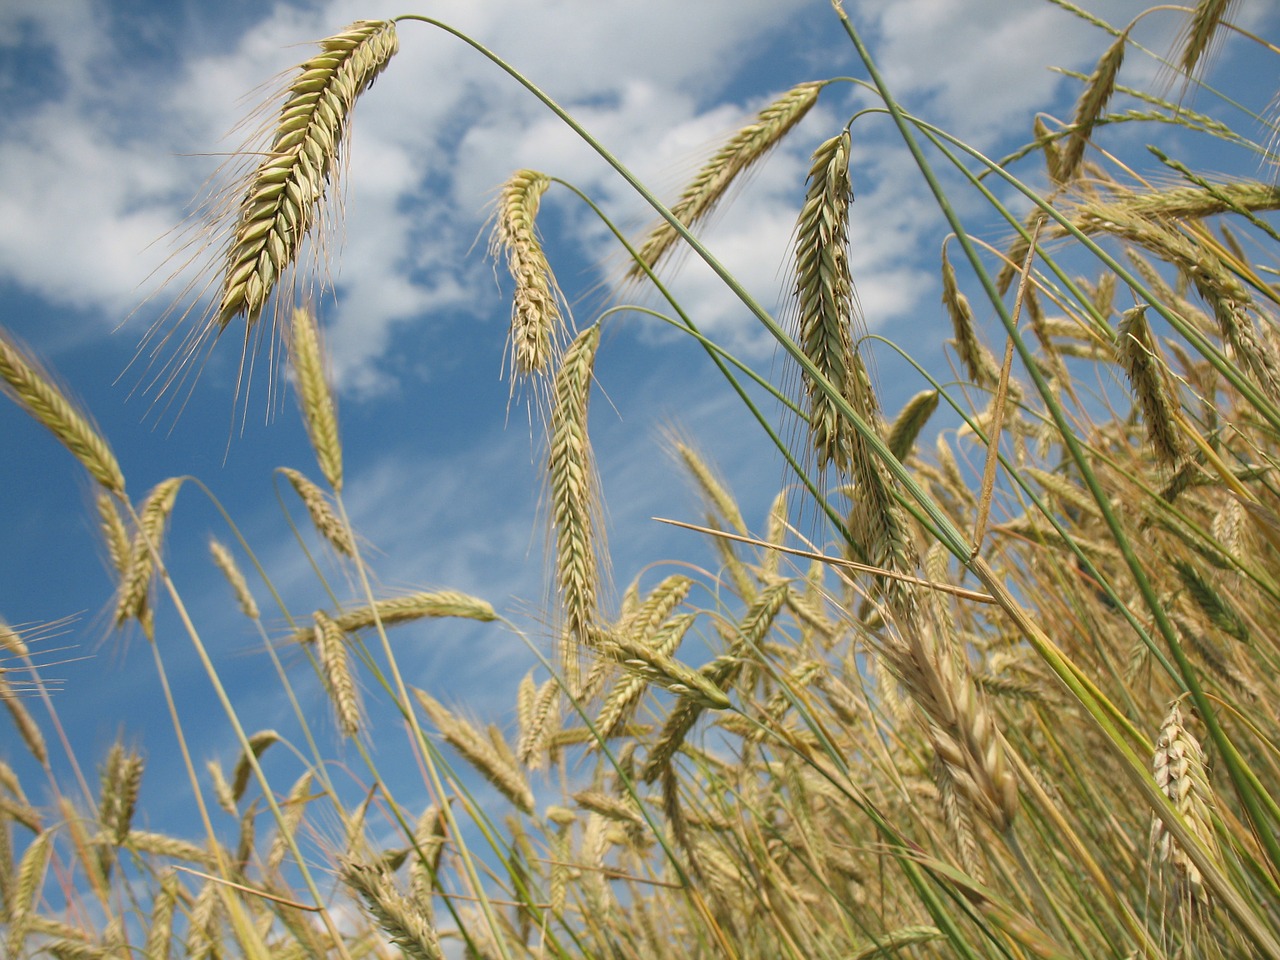 कृषि उत्पादकता बढ़ाने का सबसे अच्छा तरीका क्या है? | MD BIOCOALS